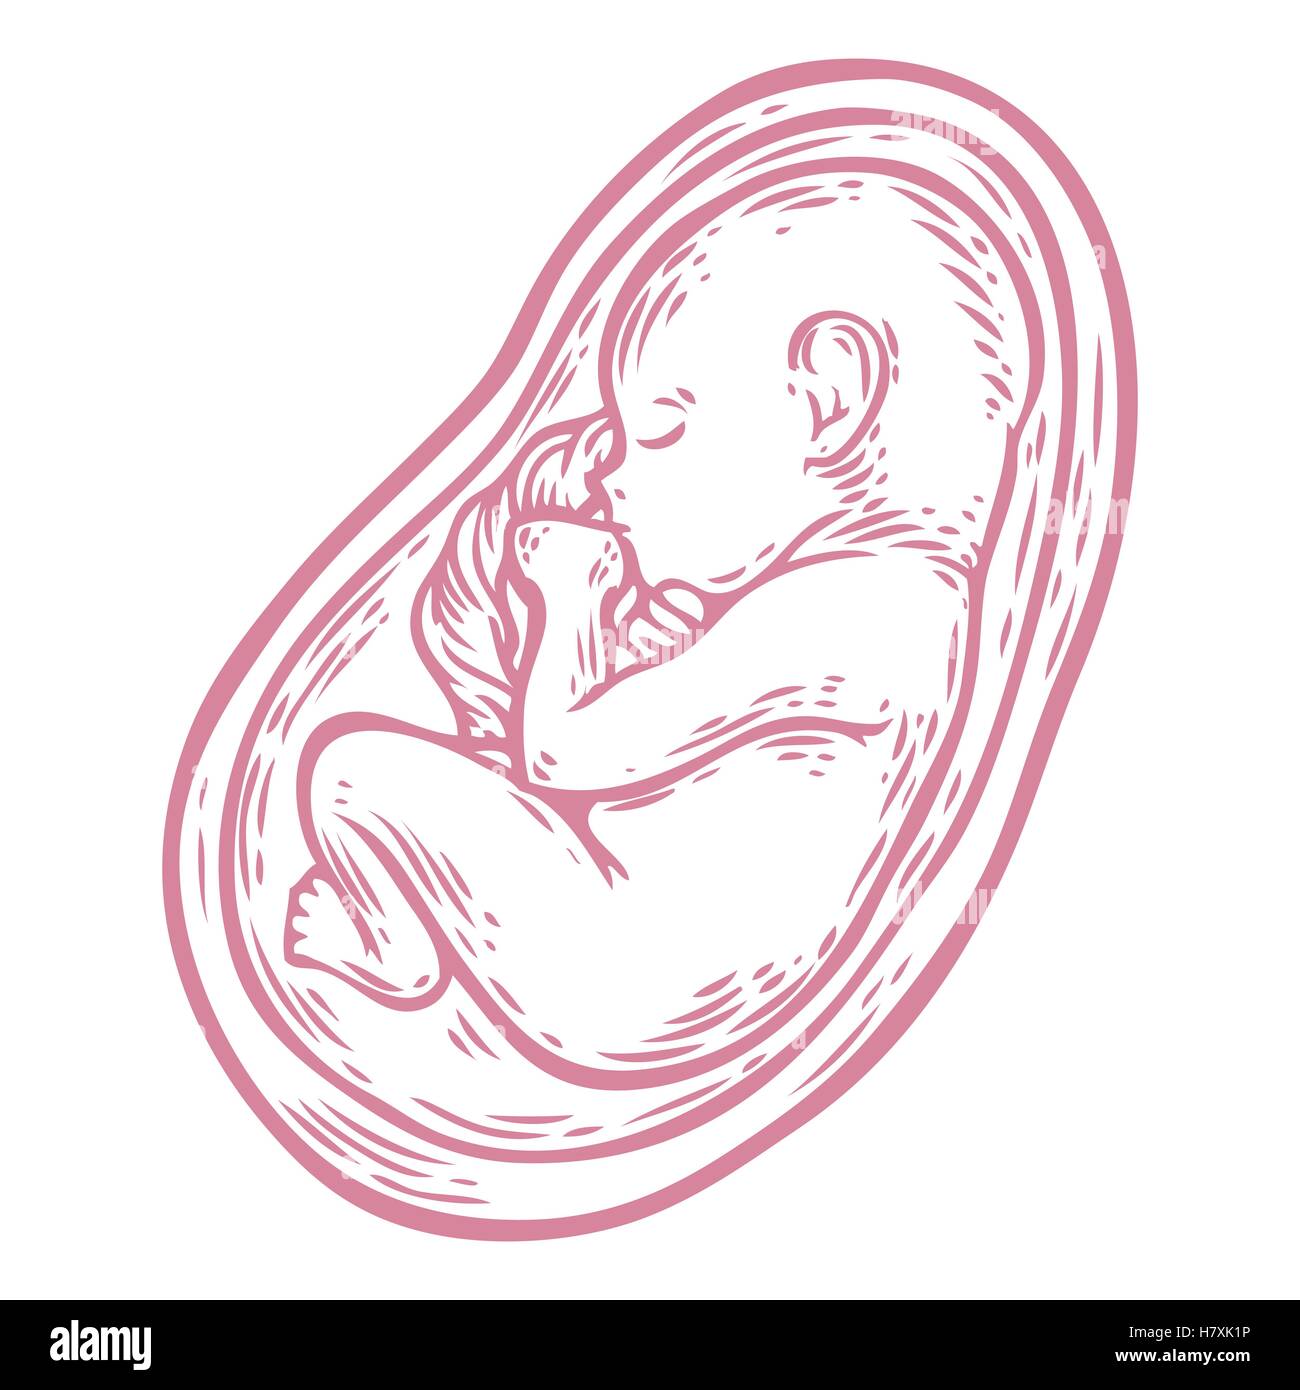 Foetus humain concept hand drawn vector illustration bébé en croissance prénatale, umbilicle épinière isolé sur un fond blanc comme un ob Illustration de Vecteur